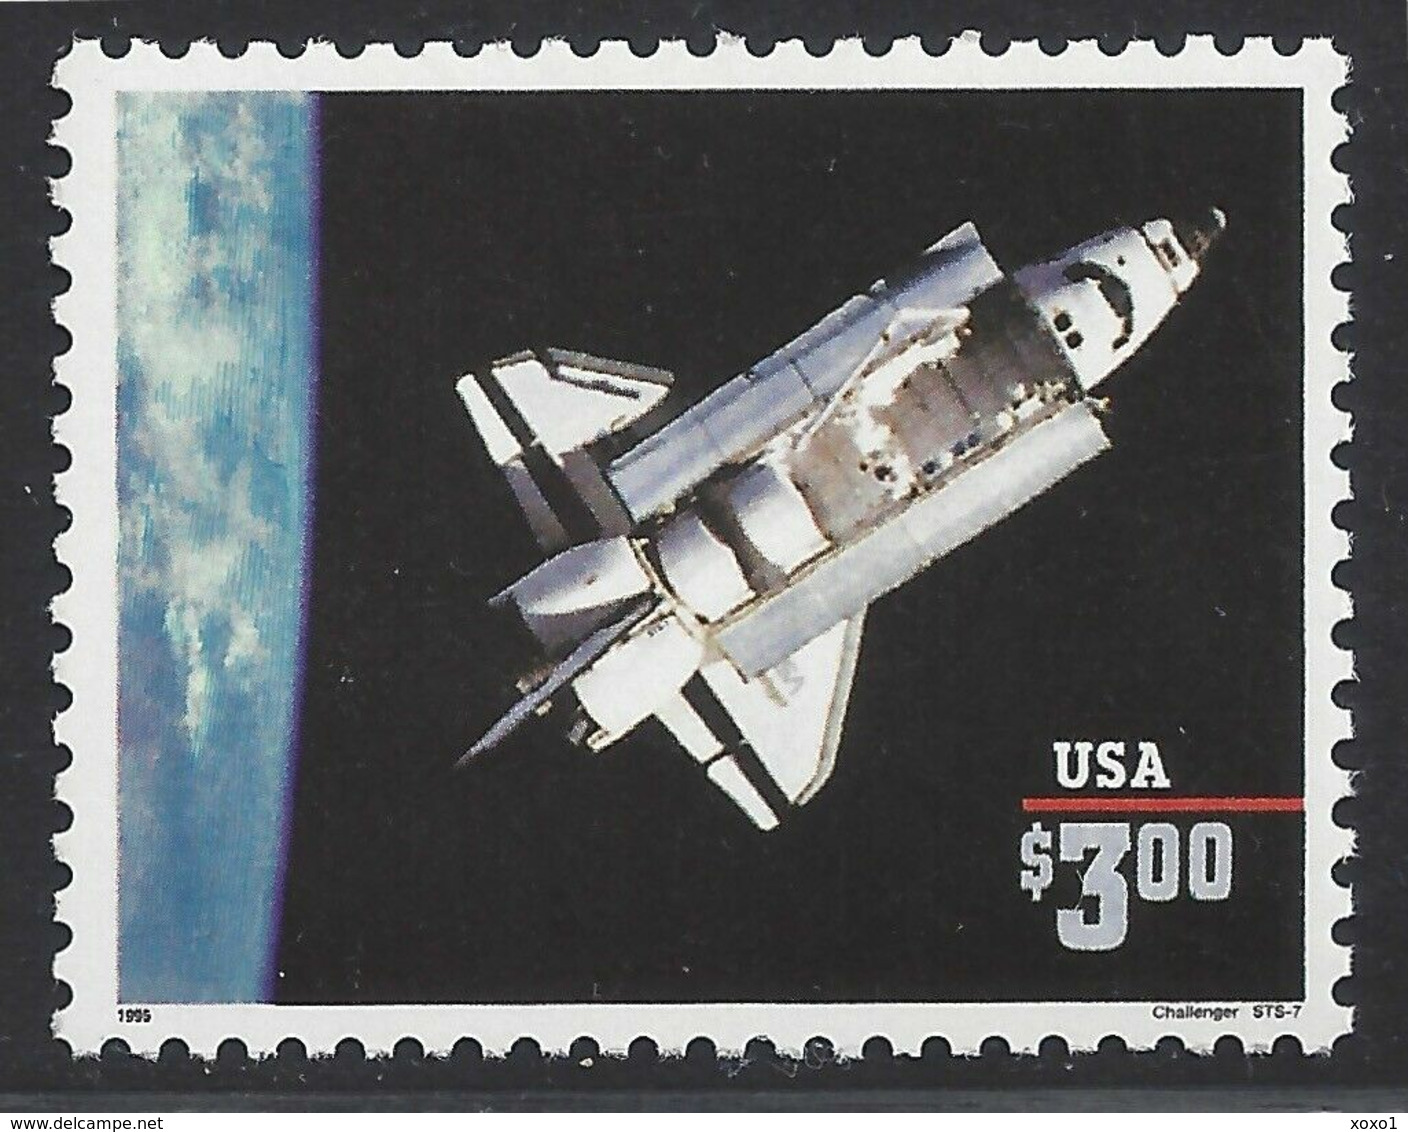 USA 1995 MiNr. 2581 I  CHALLENGER SPACE SHUTTLE 1v  MNH**  7.50 € - Estados Unidos